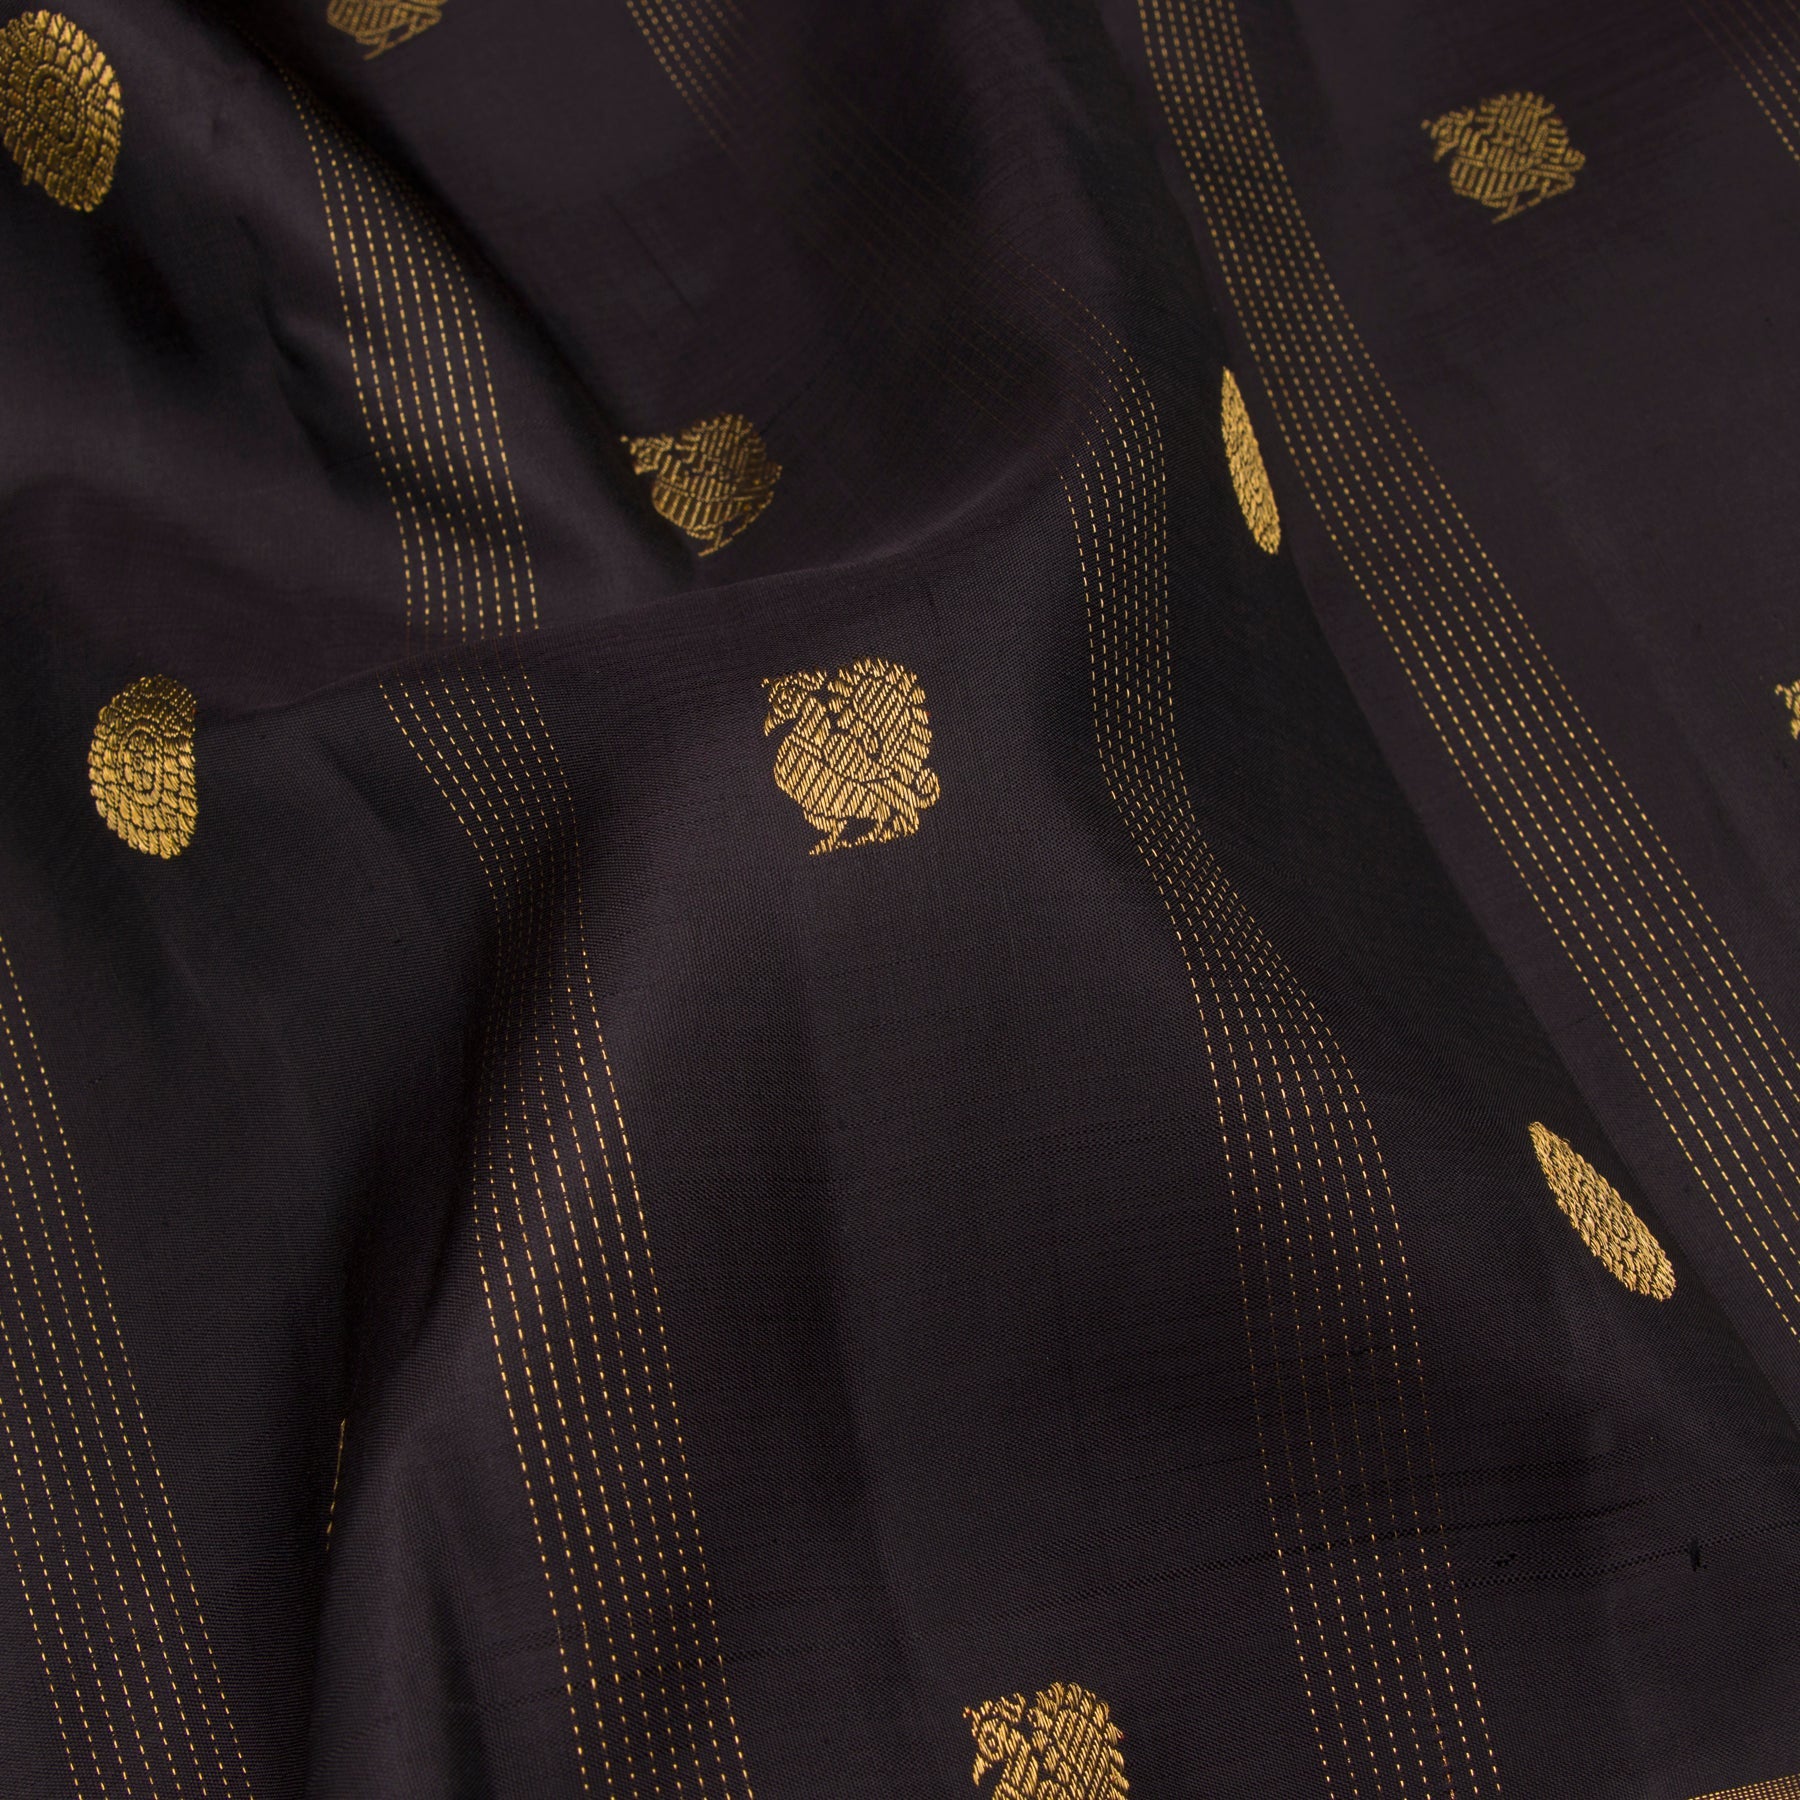 Kanakavalli Kanjivaram Silk Sari 23-599-HS001-09683 - Fabric View